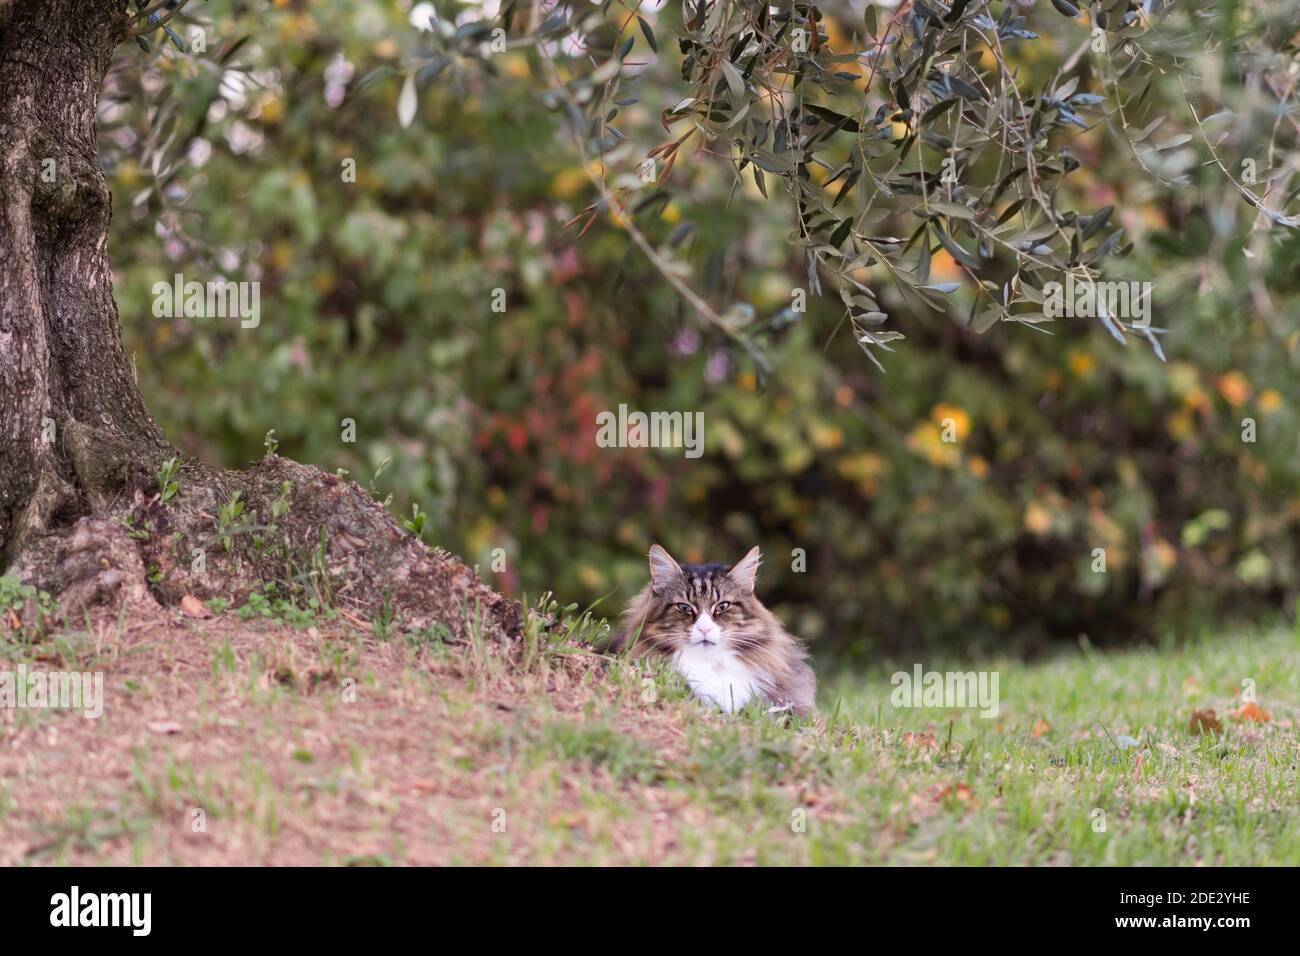 Magnifique chat de forêt norvégienne situé près d'un olivier. Tranquillité, couleurs chaudes, vie à l'extérieur Banque D'Images